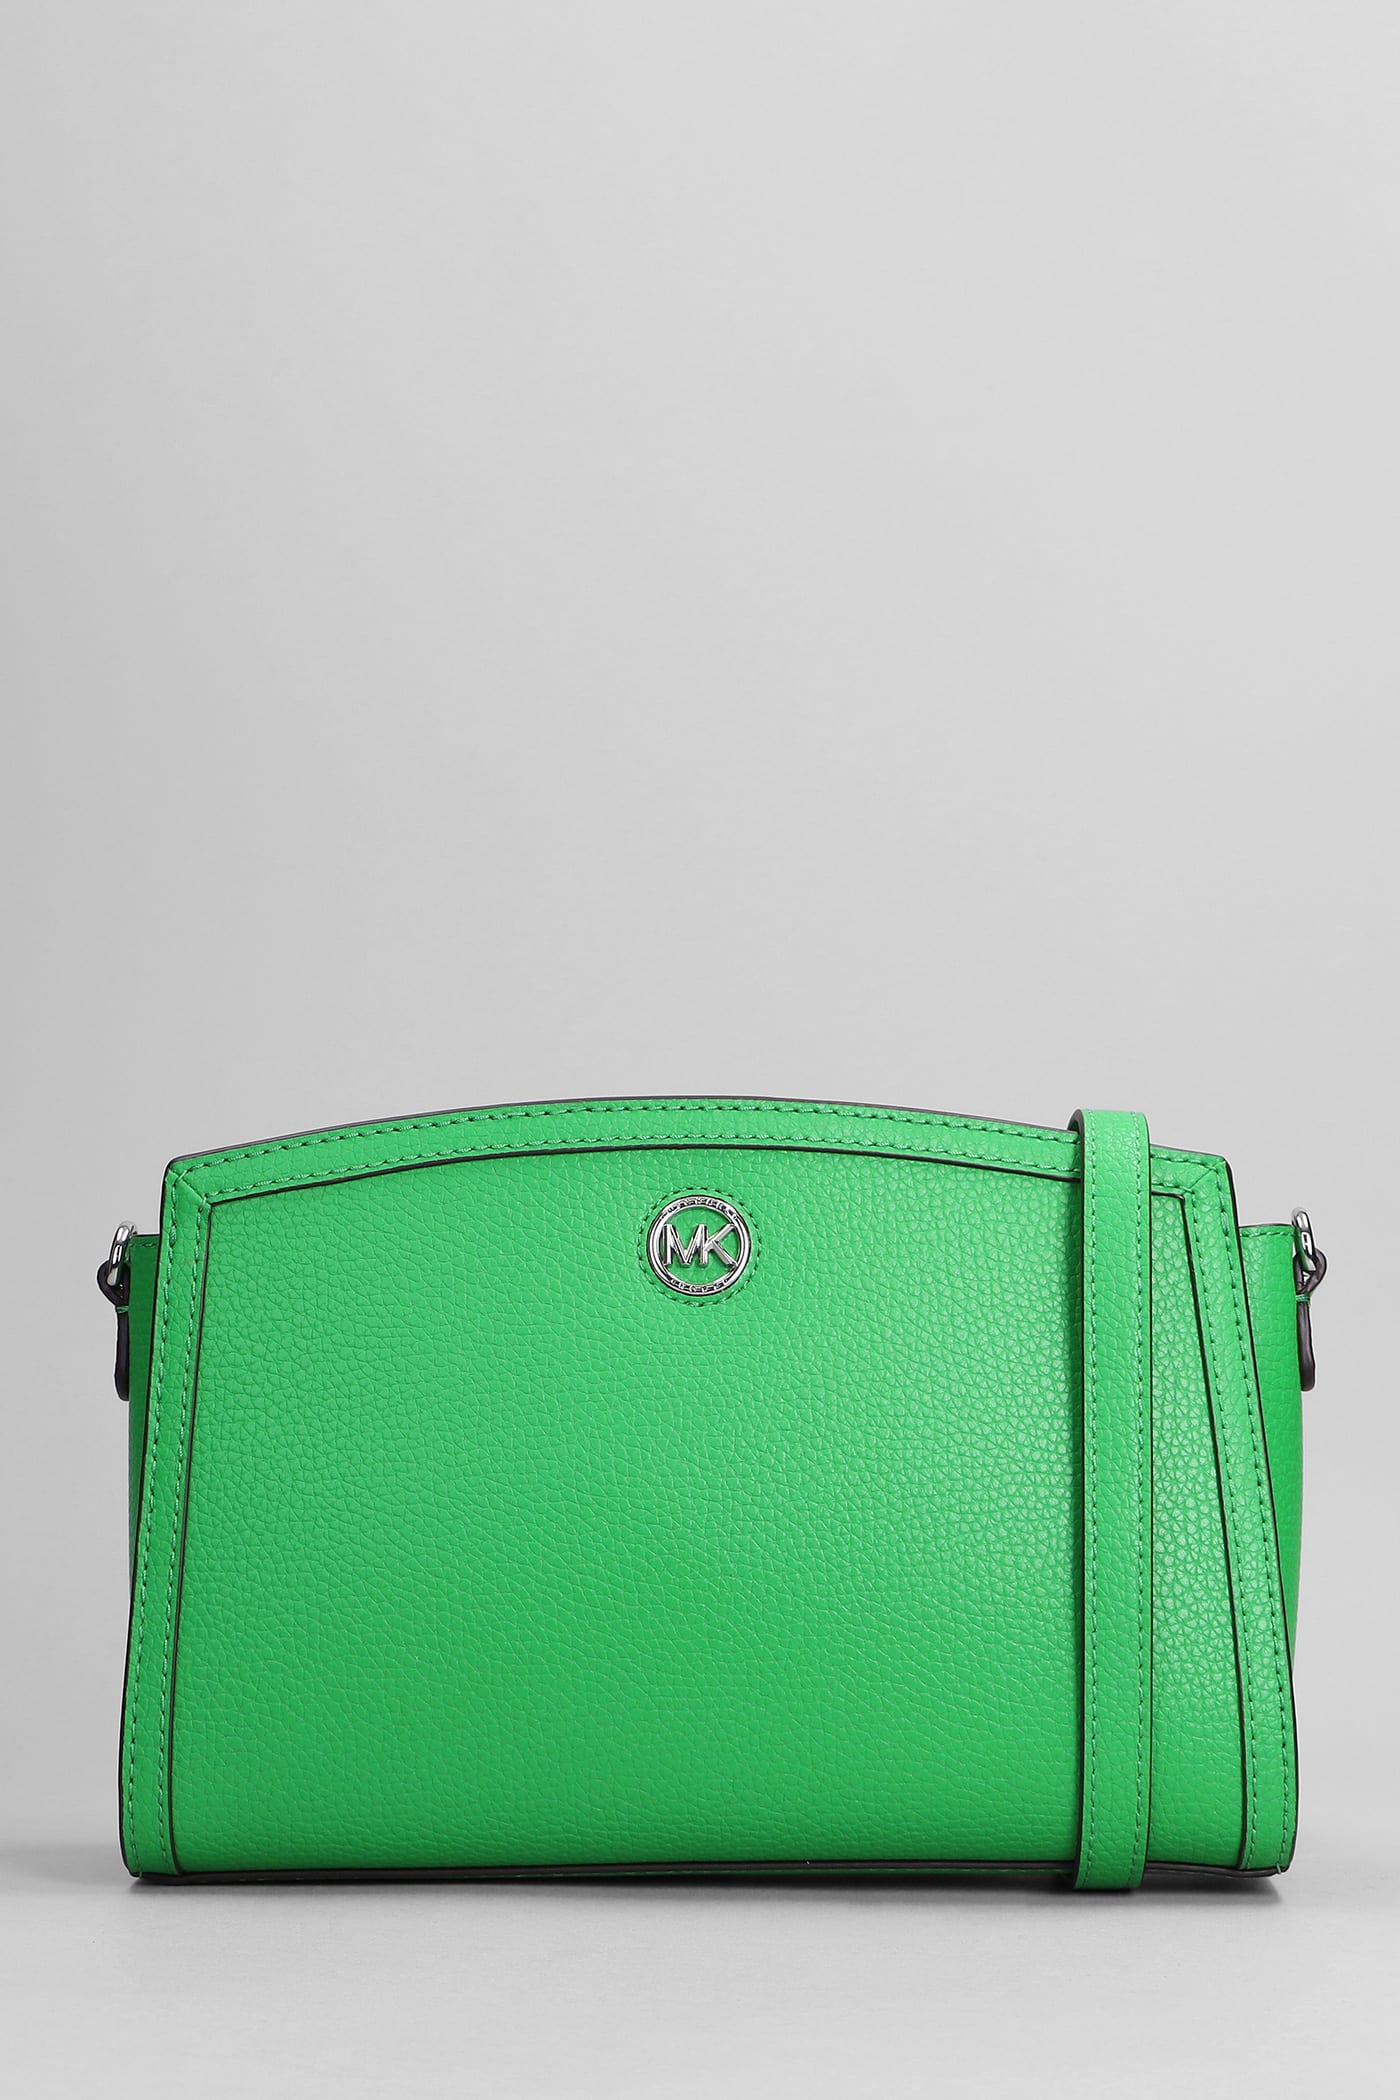 Michael Kors Chantal Shoulder Bag In Green Leather